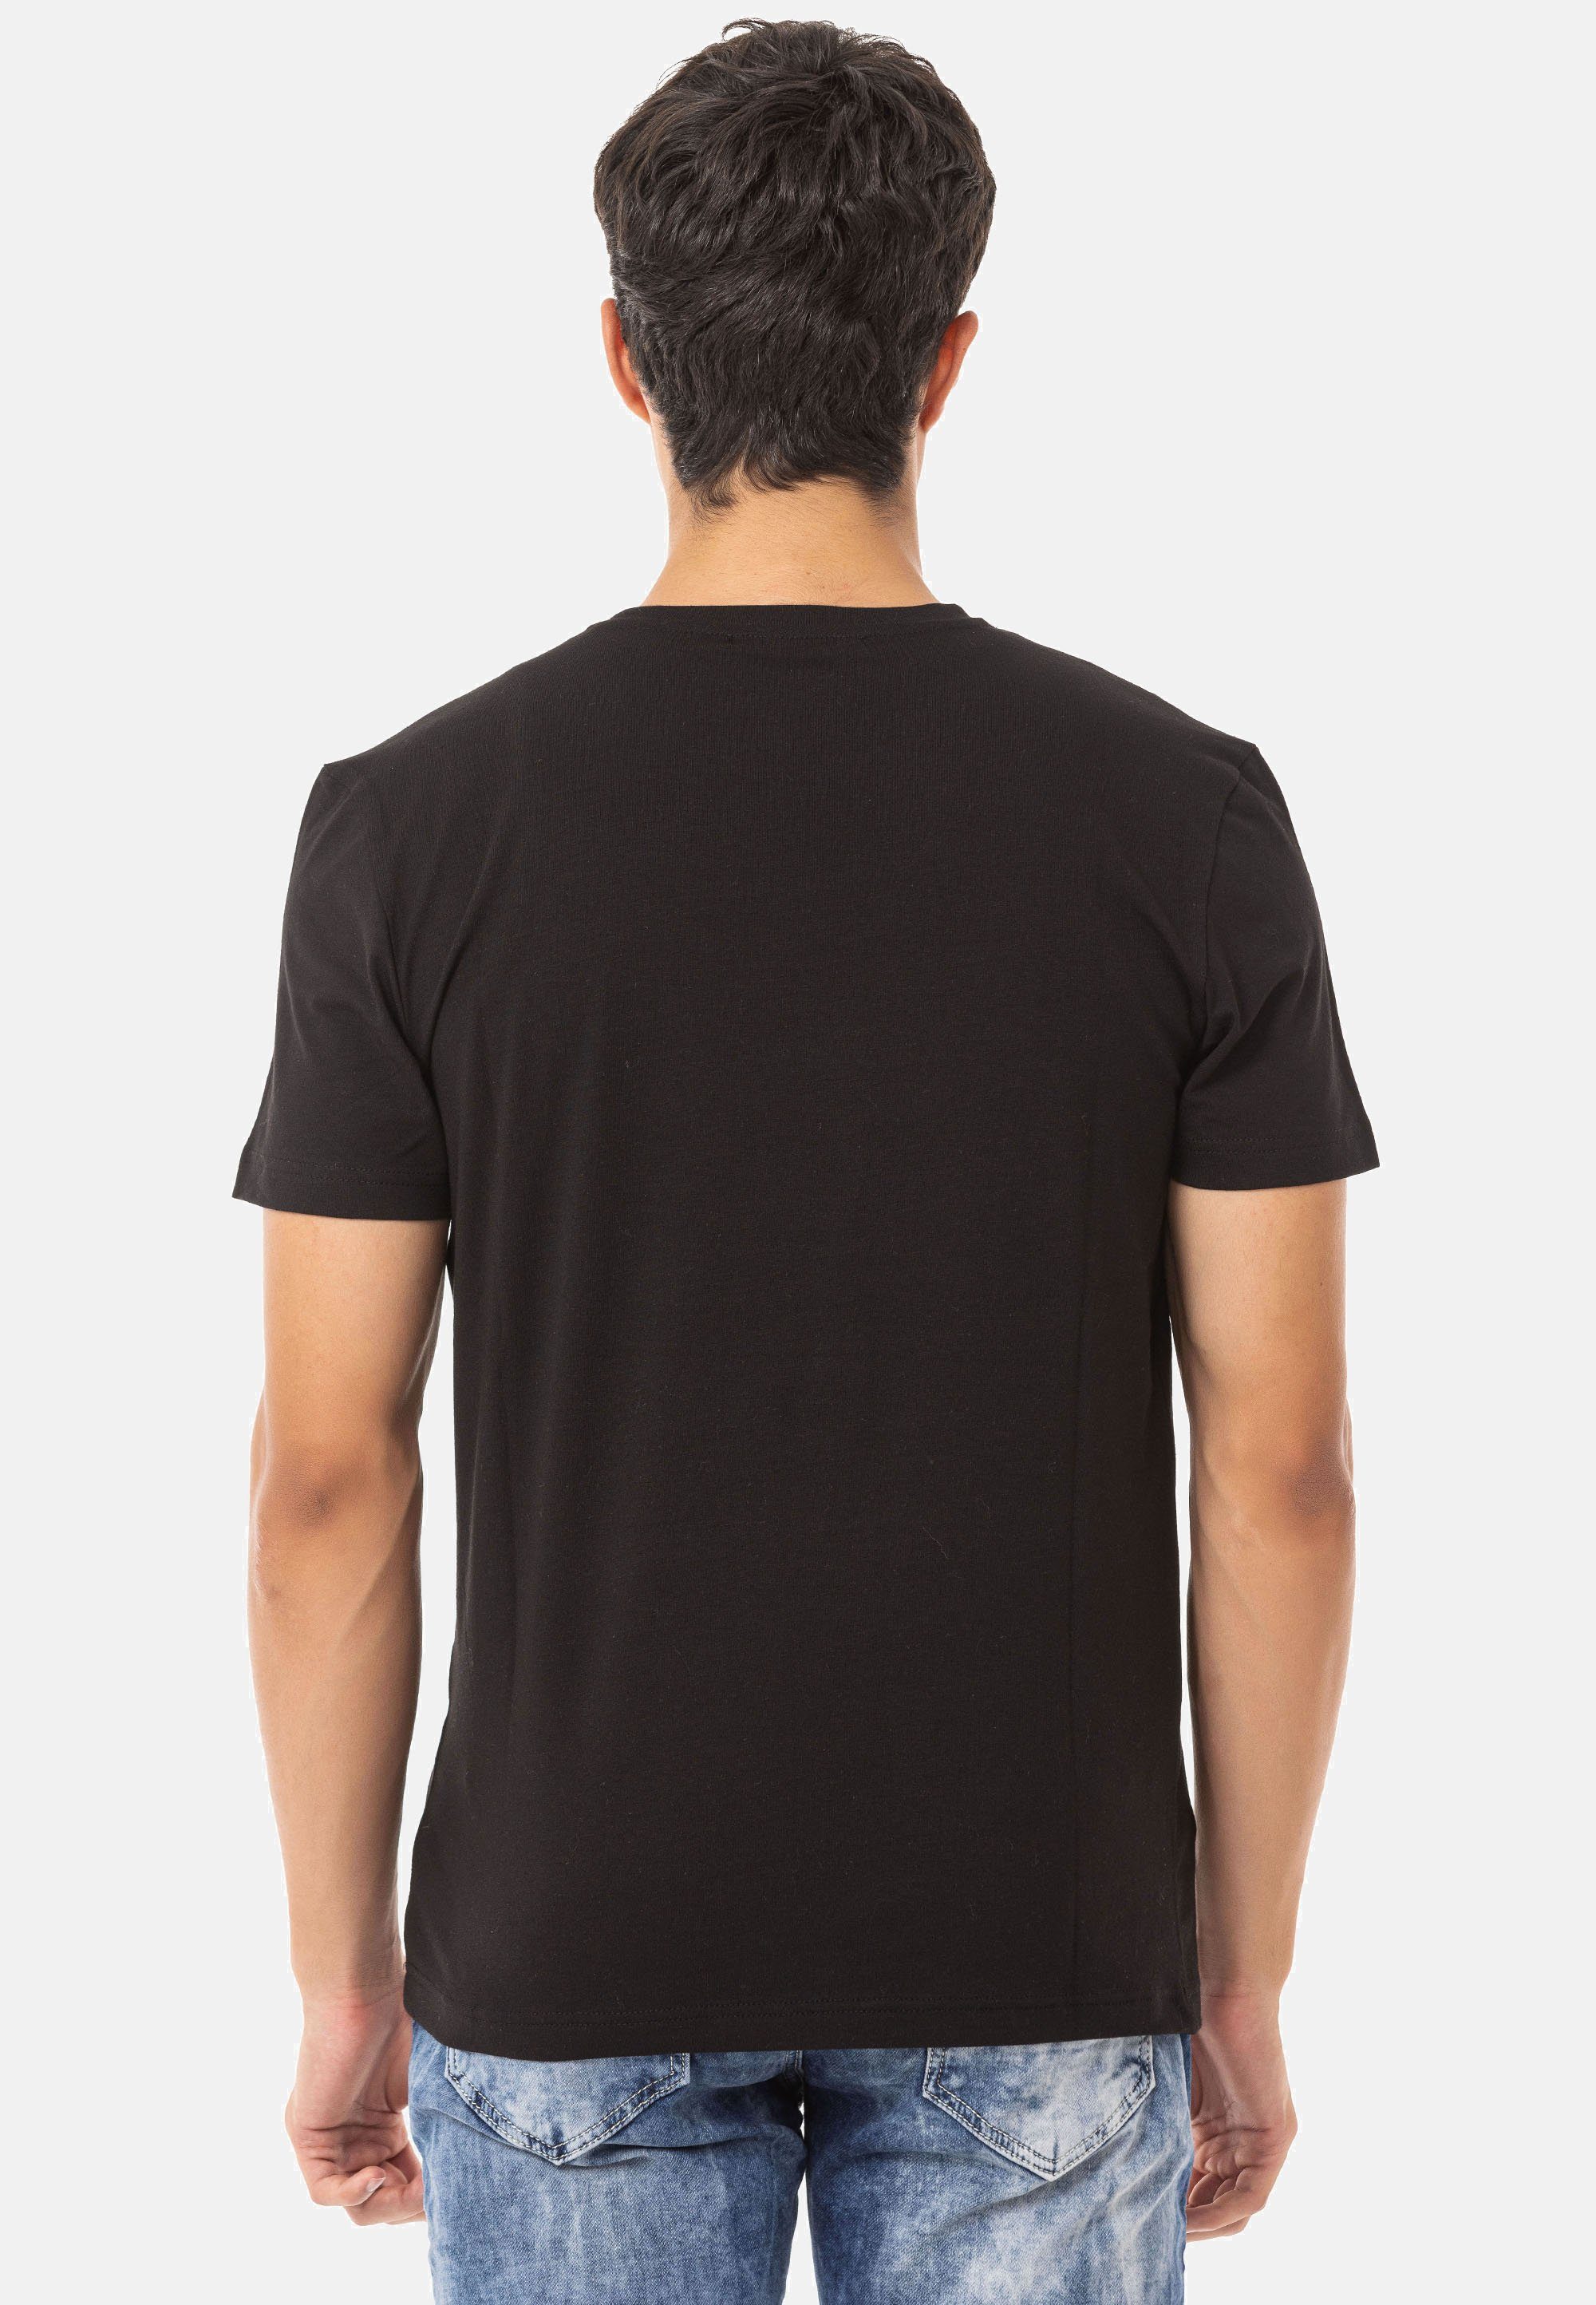 Cipo & Baxx T-Shirt trendigem CT717 Markenprint schwarz mit